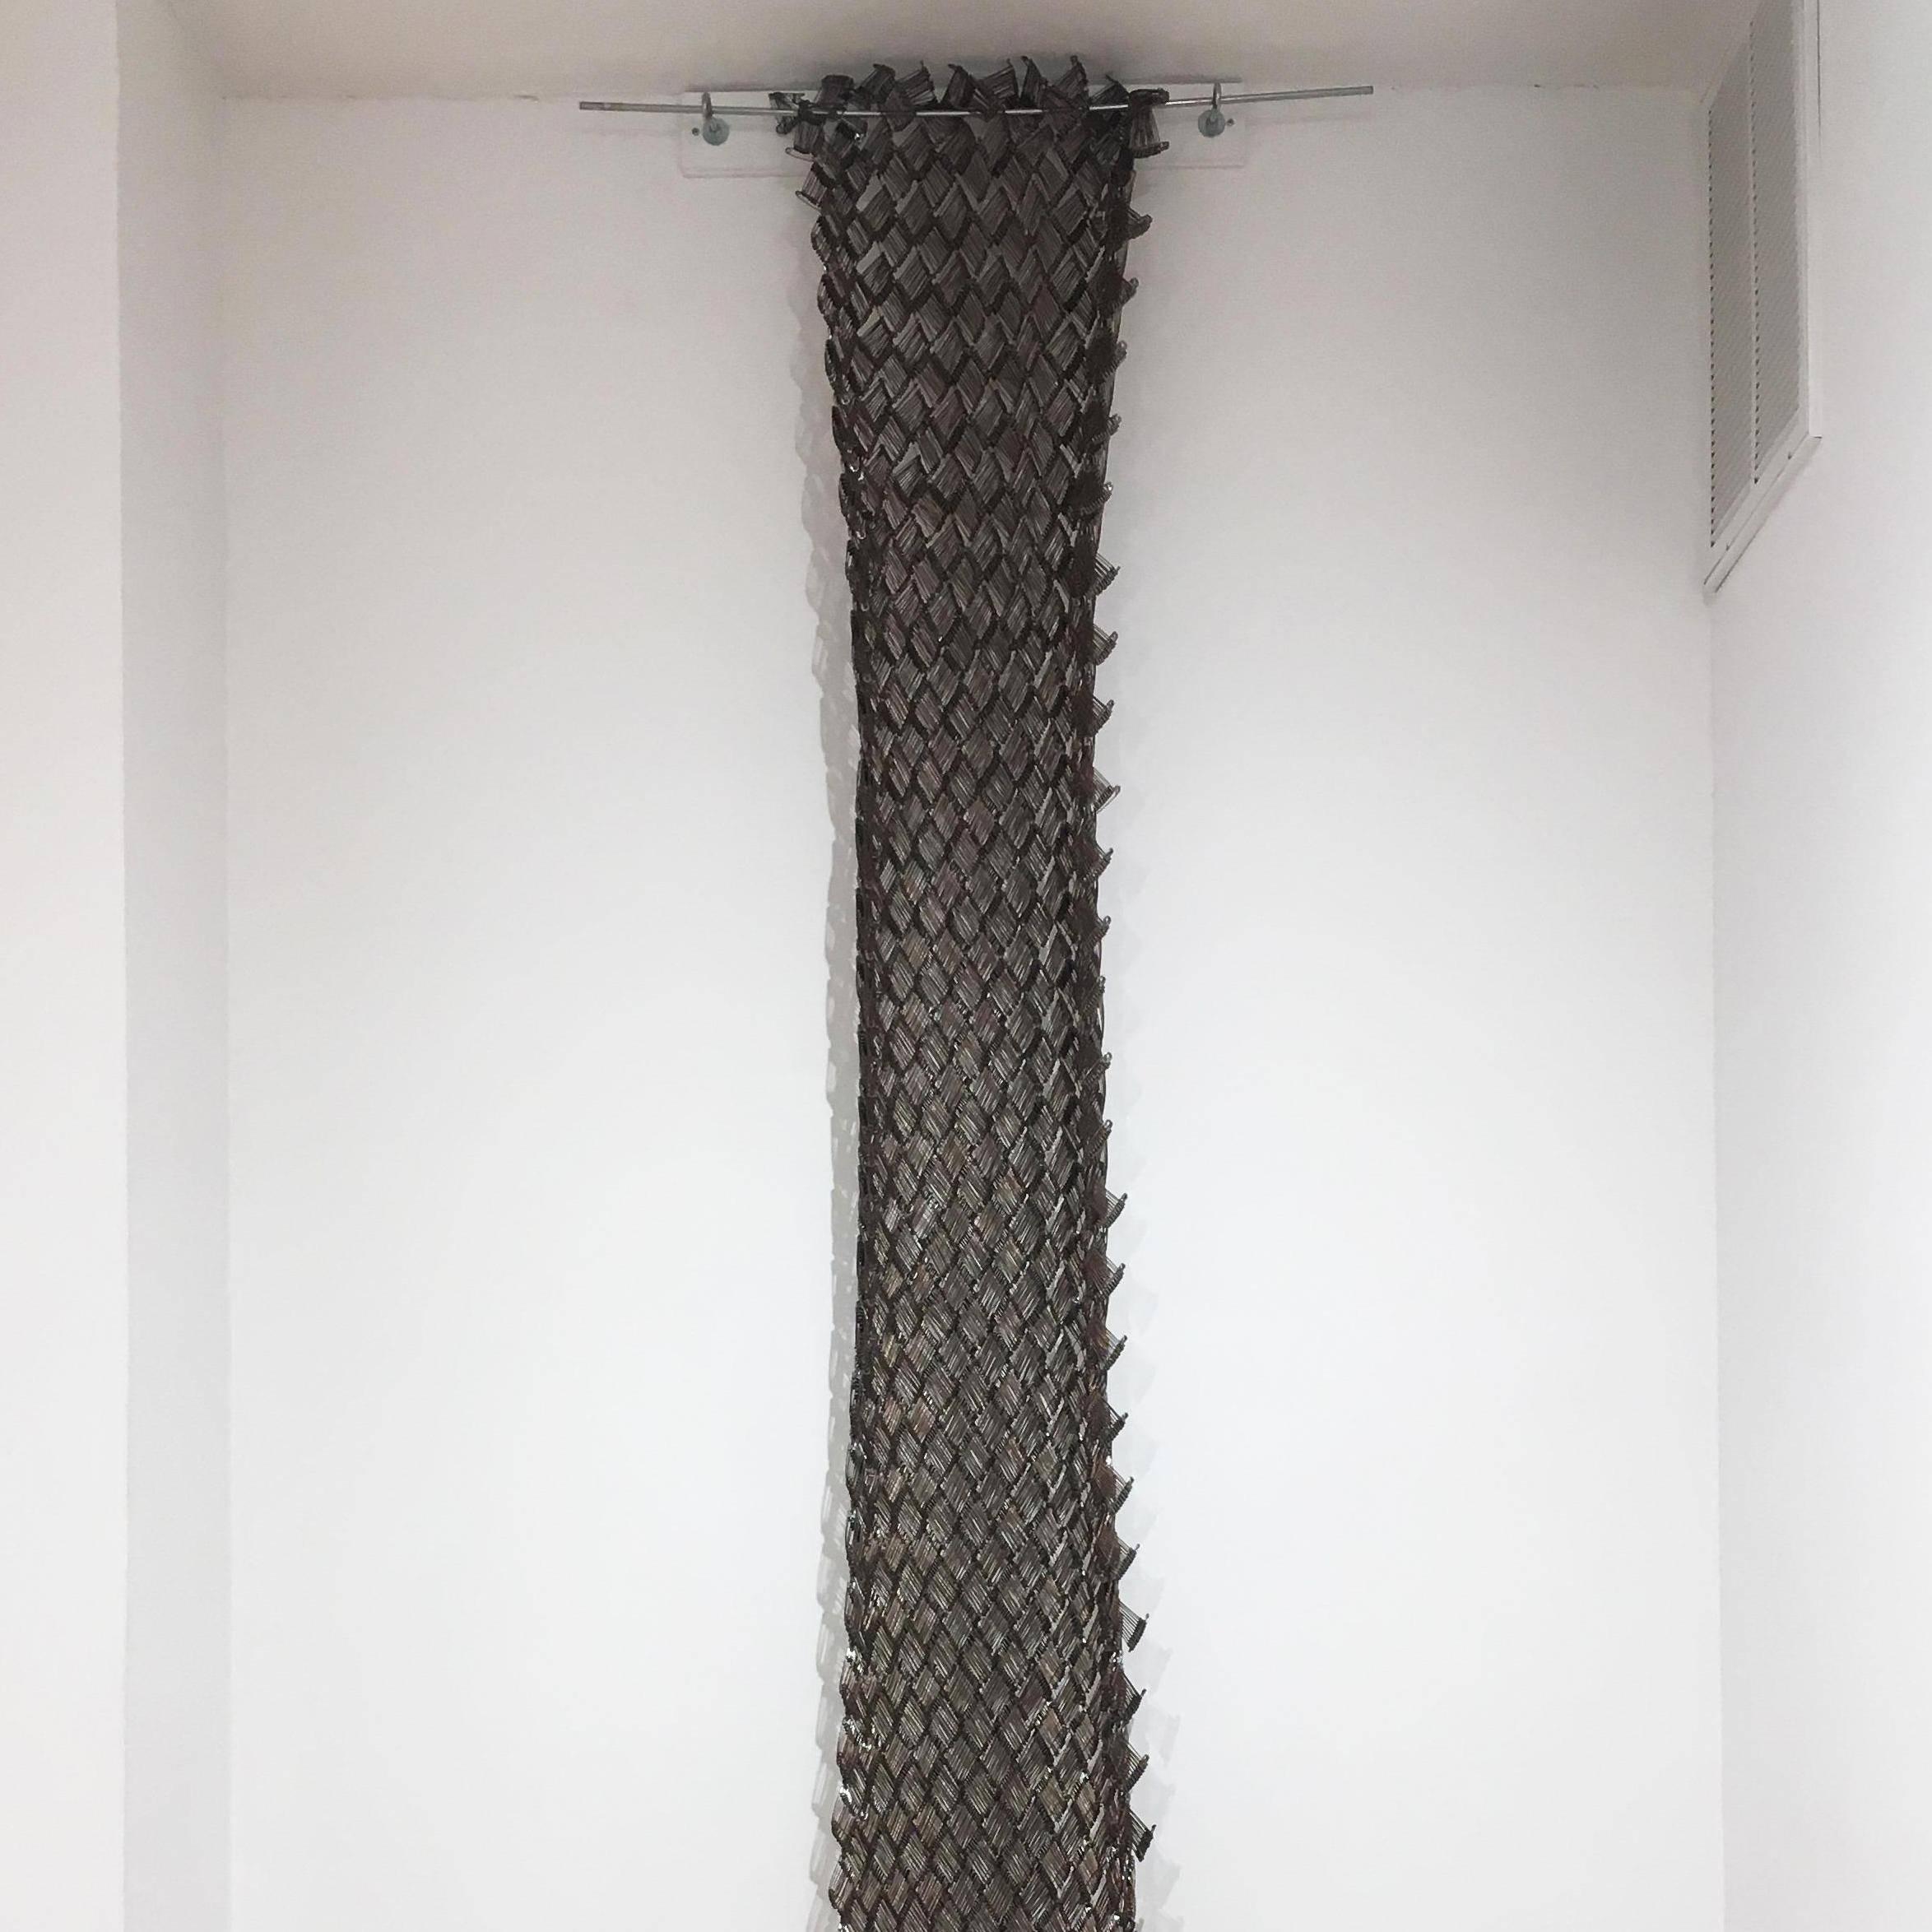 Tamiko Kawata, Installation piece, safety pins sculpture, 2018 3